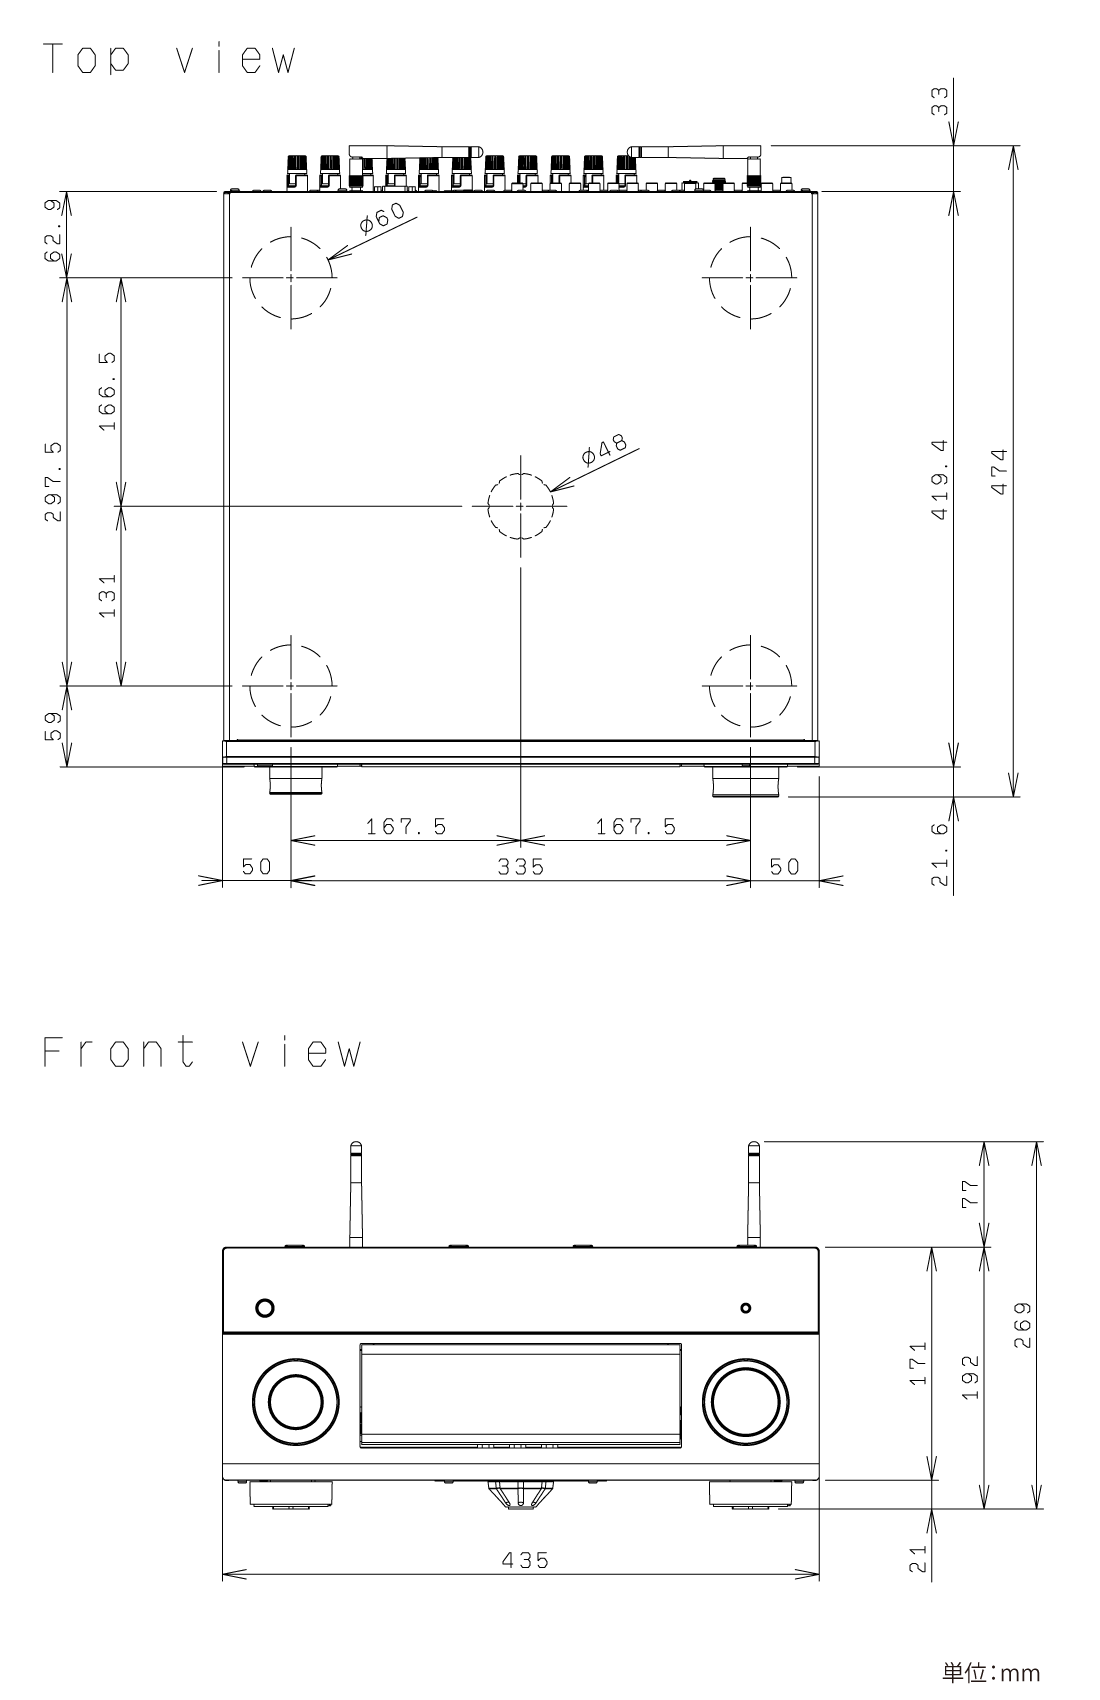 ヤマハ | RX-A2080 - AVアンプ - 本体寸法図